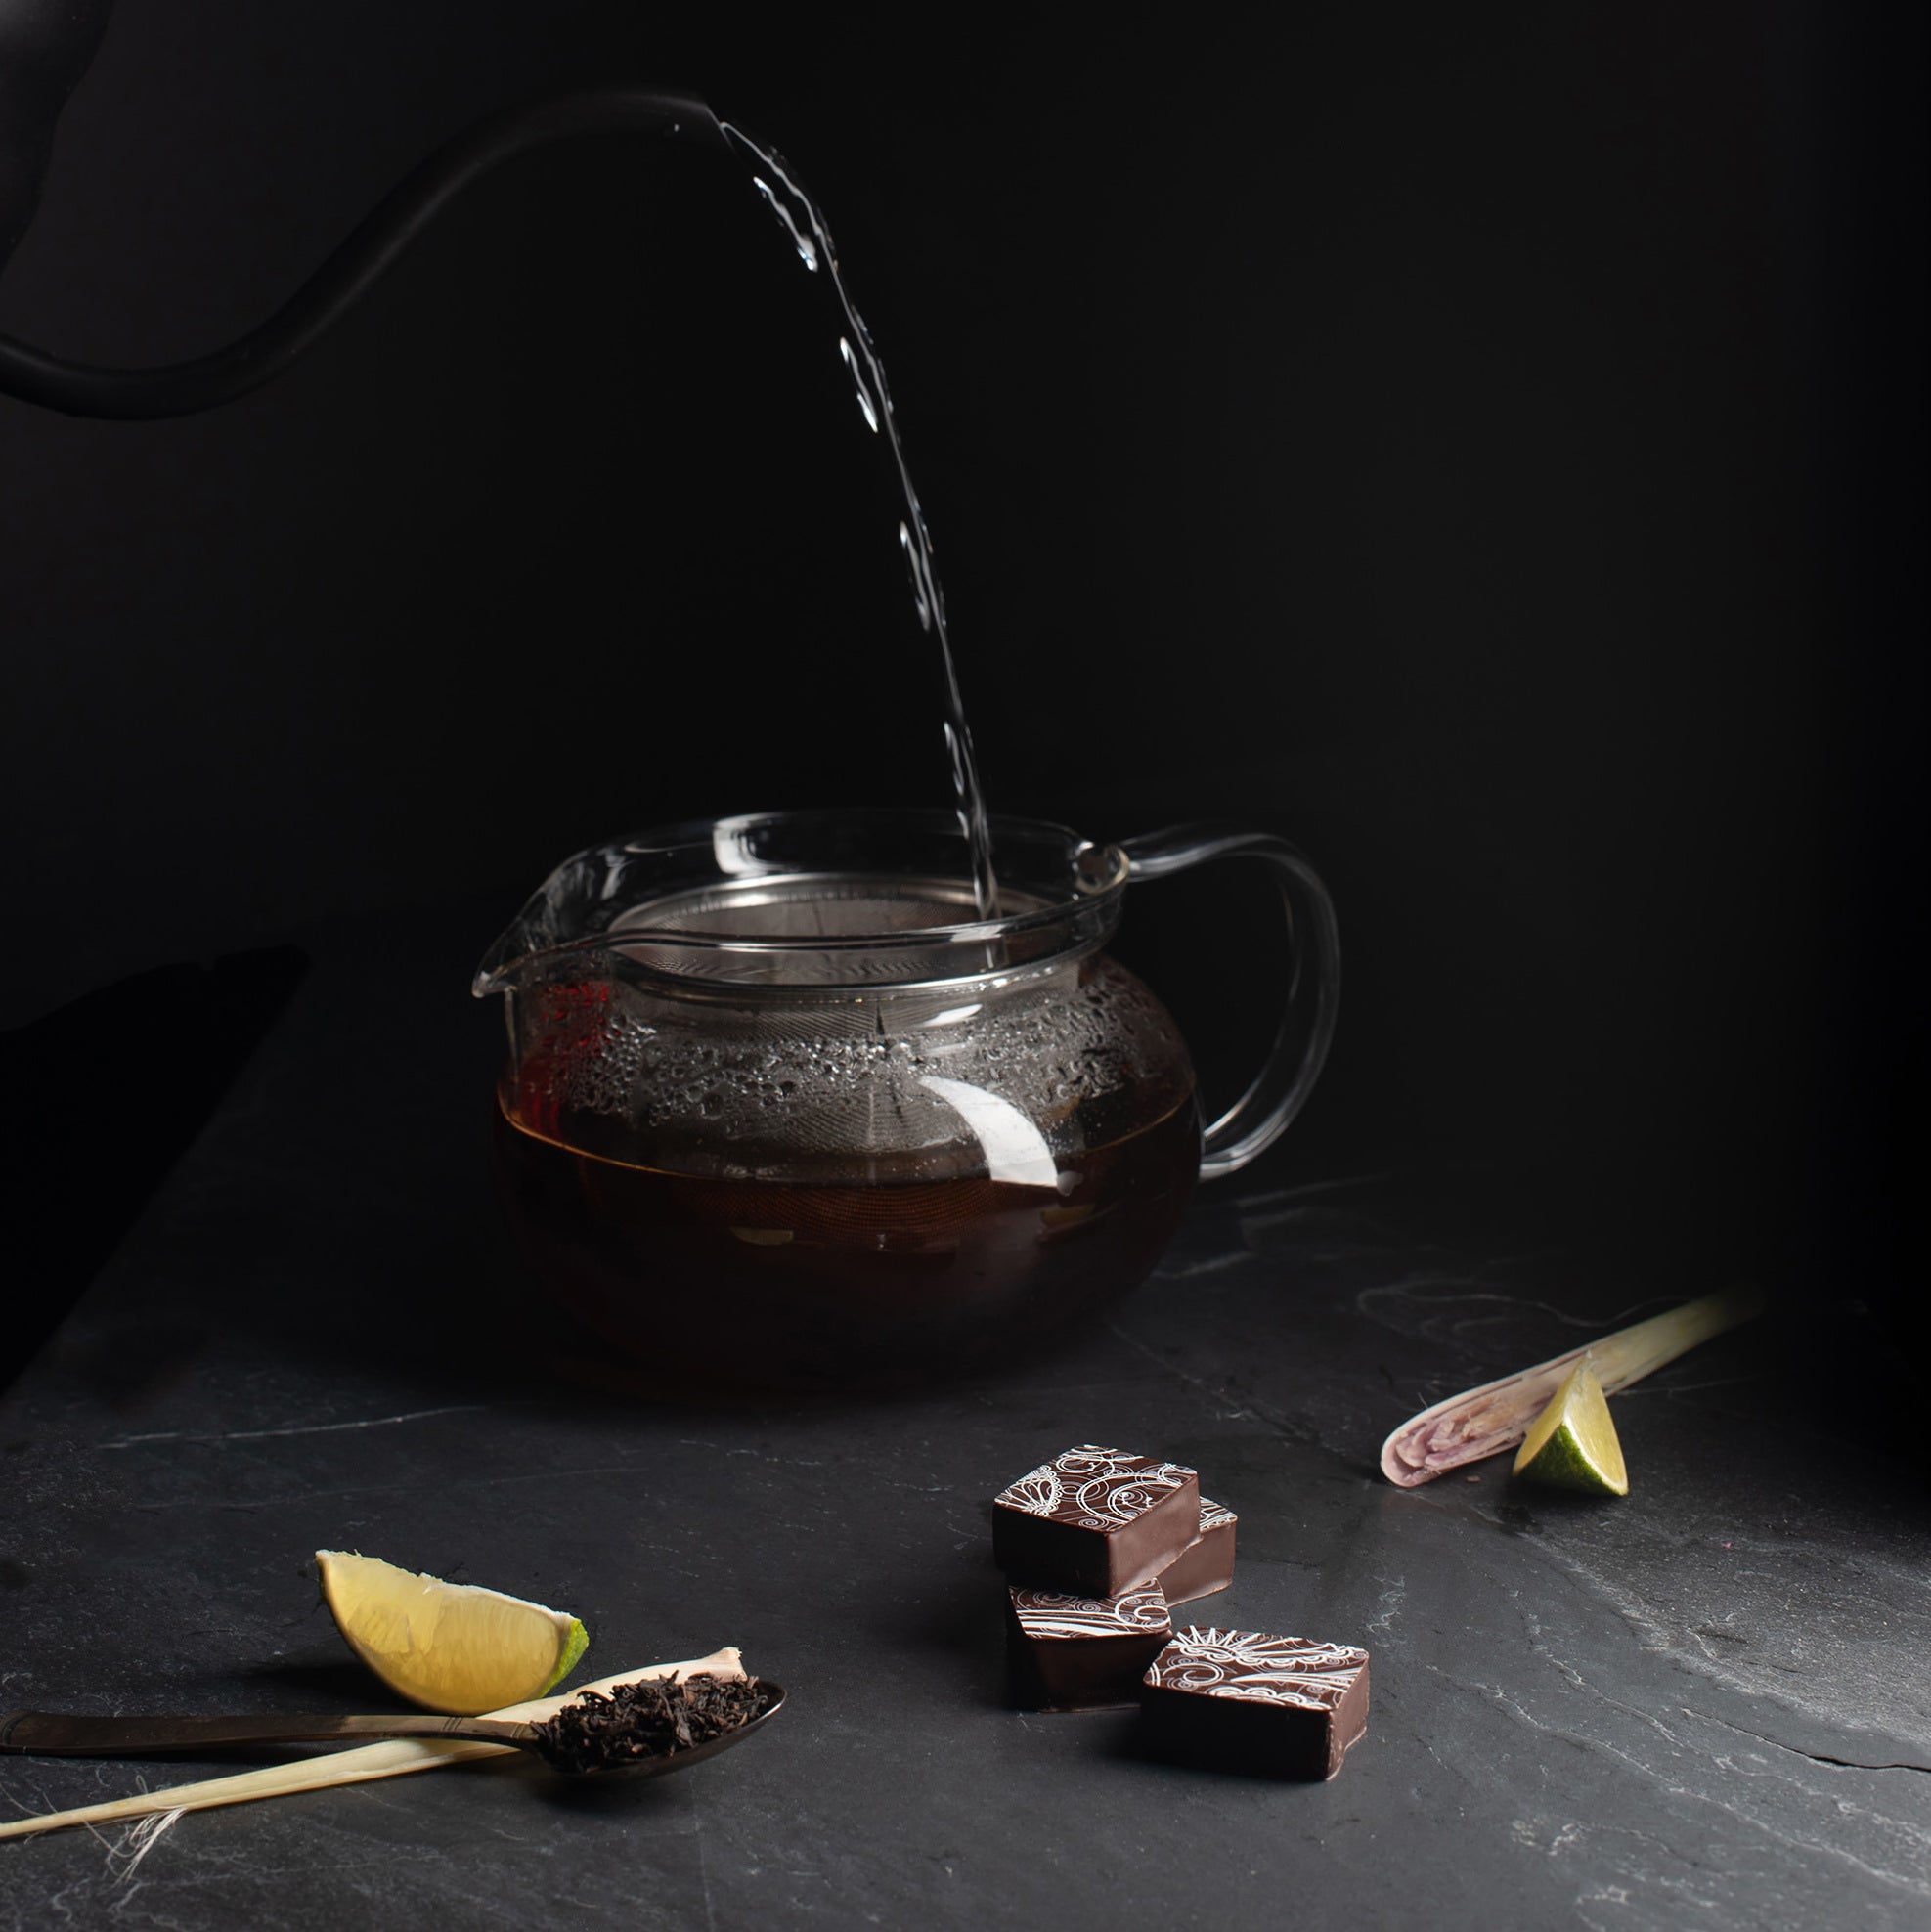 Tea and Chocolate Tasting Flight - Pre Order